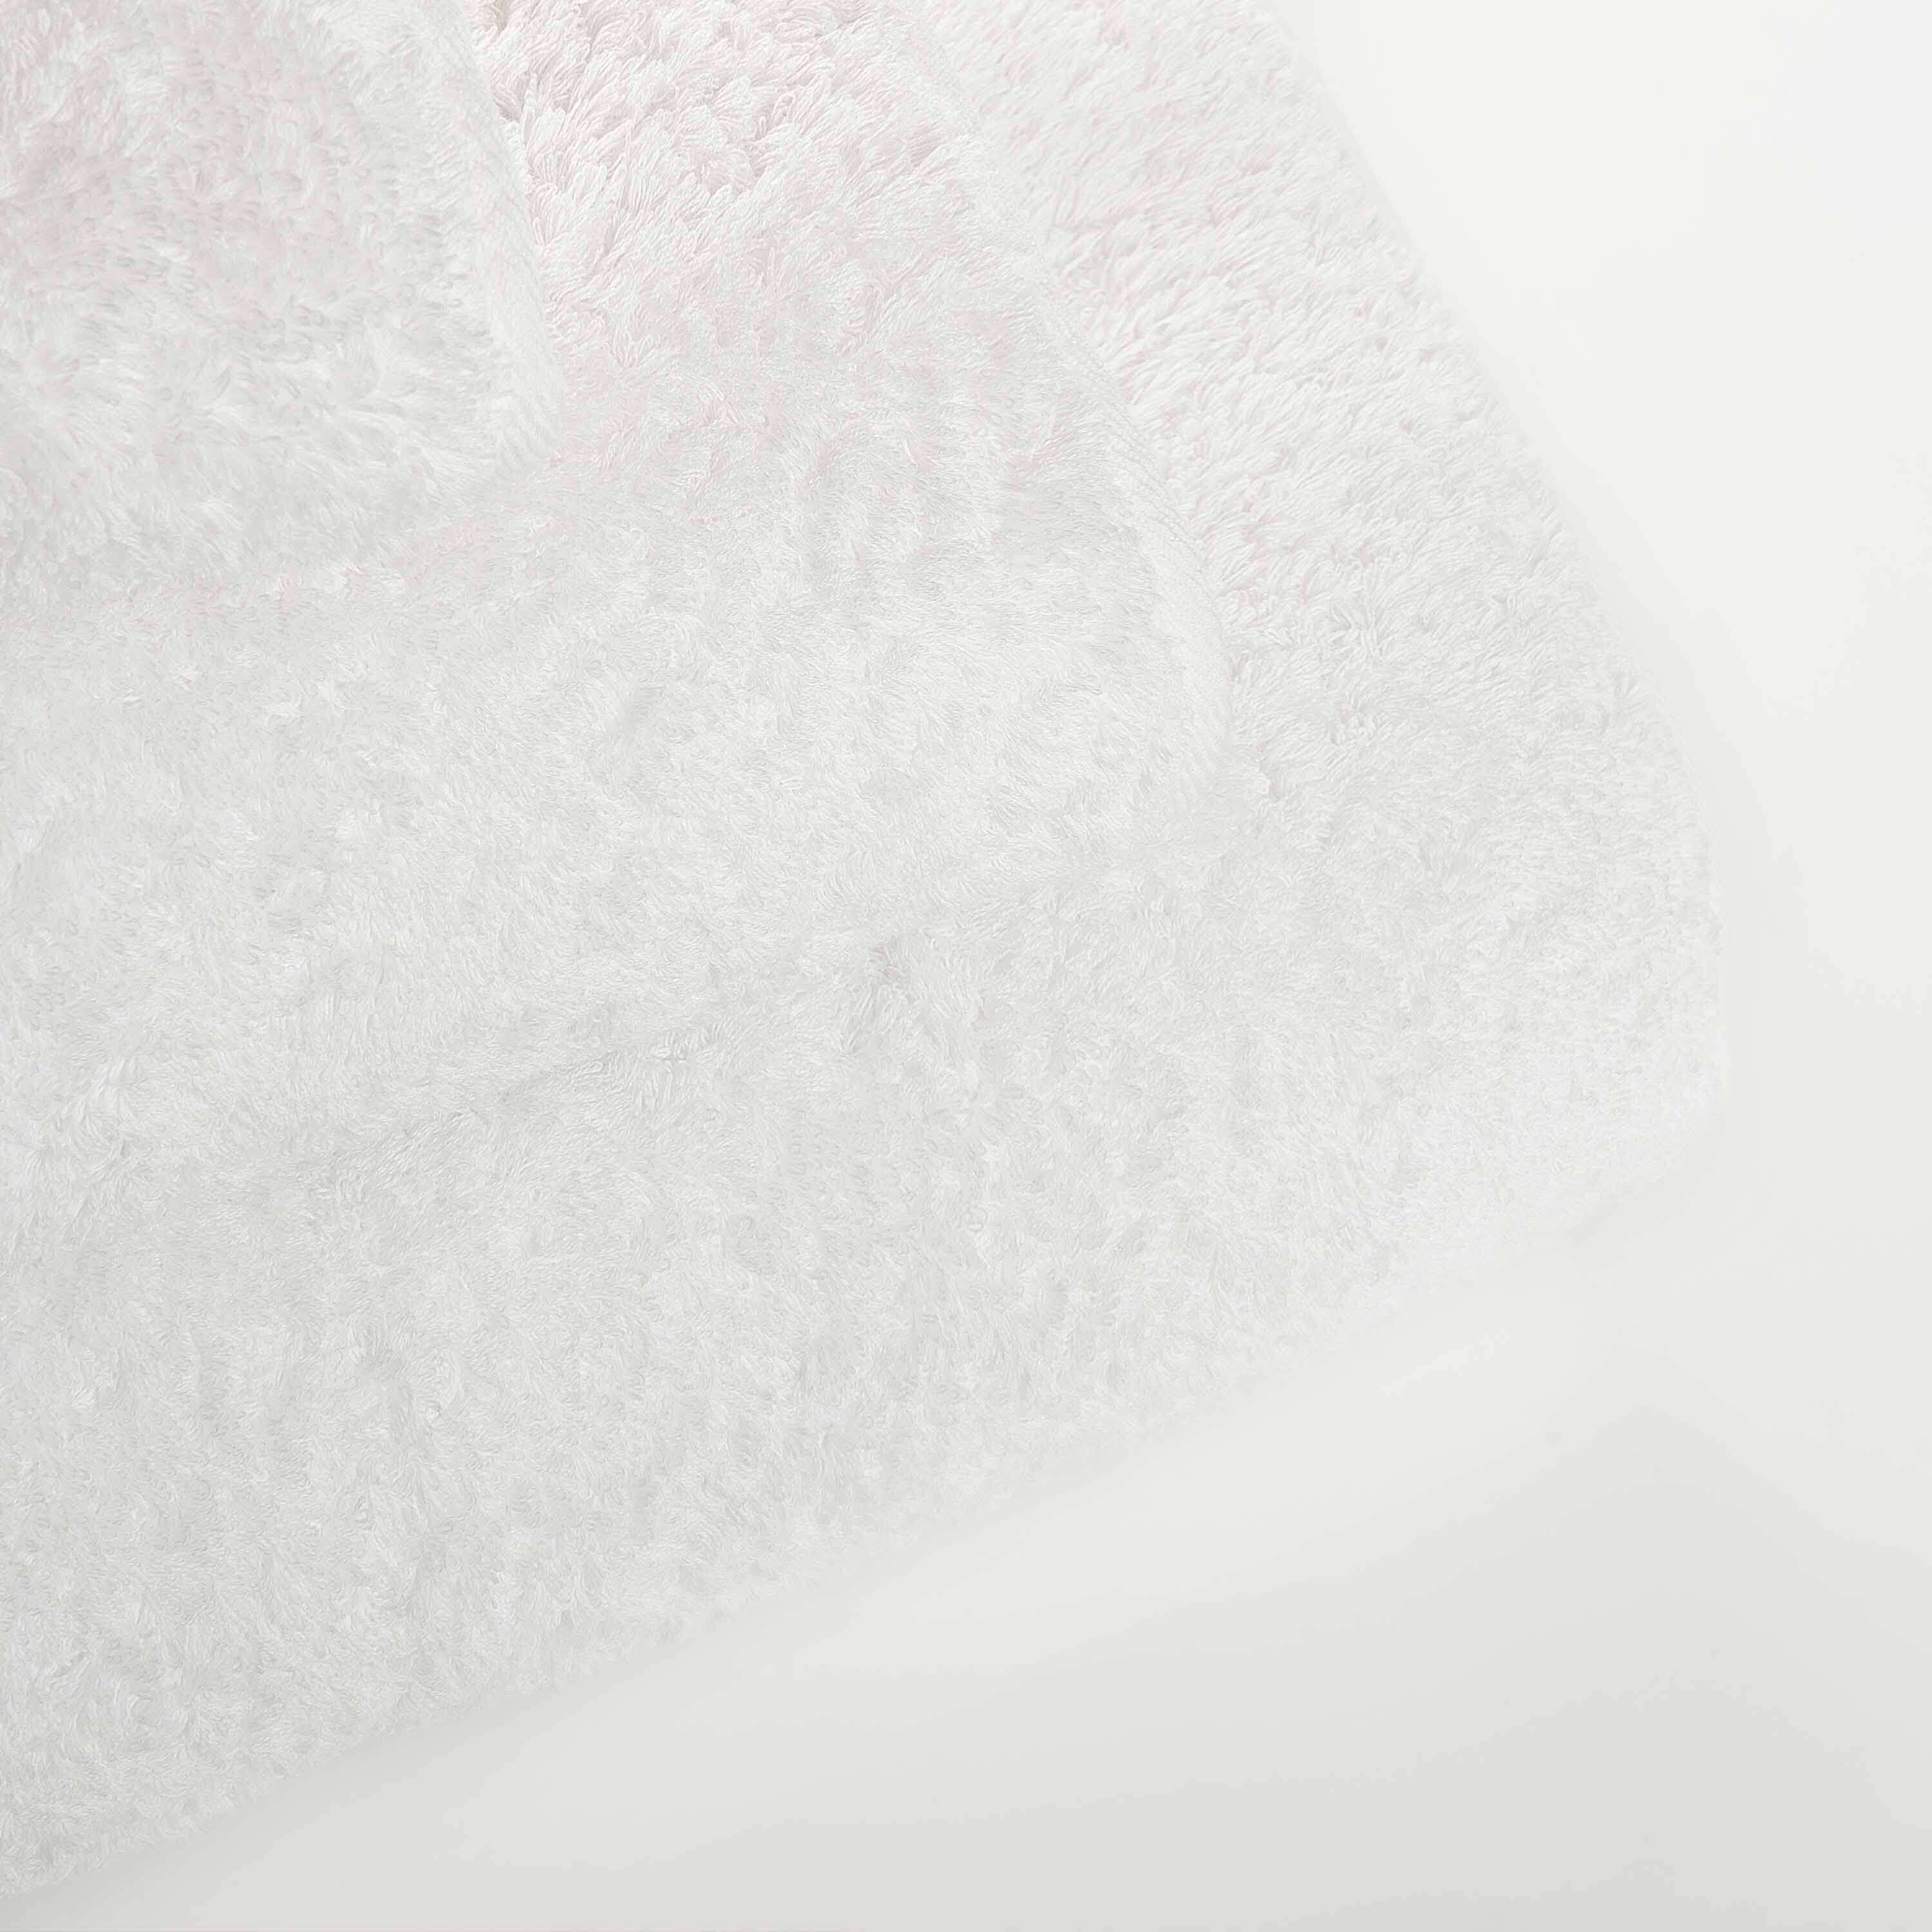 Элитное полотенце Egoist Range White ☞ Размер: 30 x 30 см